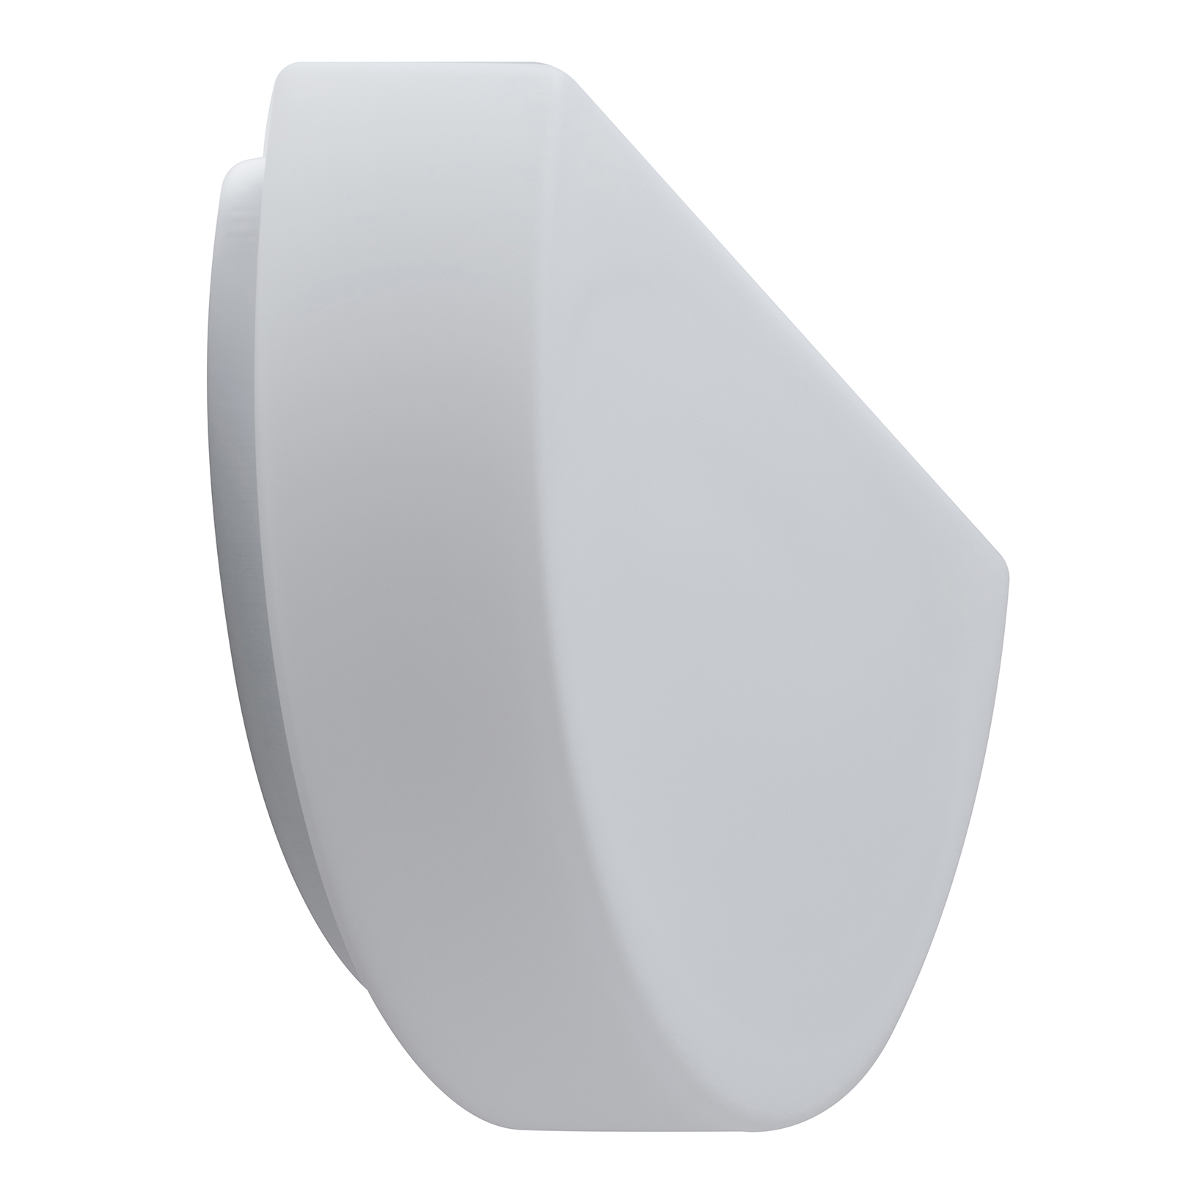 Halbrunde Opalglas-Wandleuchte NALA: Die funktionalen Wandleuchten (hier Größe S) überzeugen mit elegantem, matten Opalglas und großem Einsatzspektrum